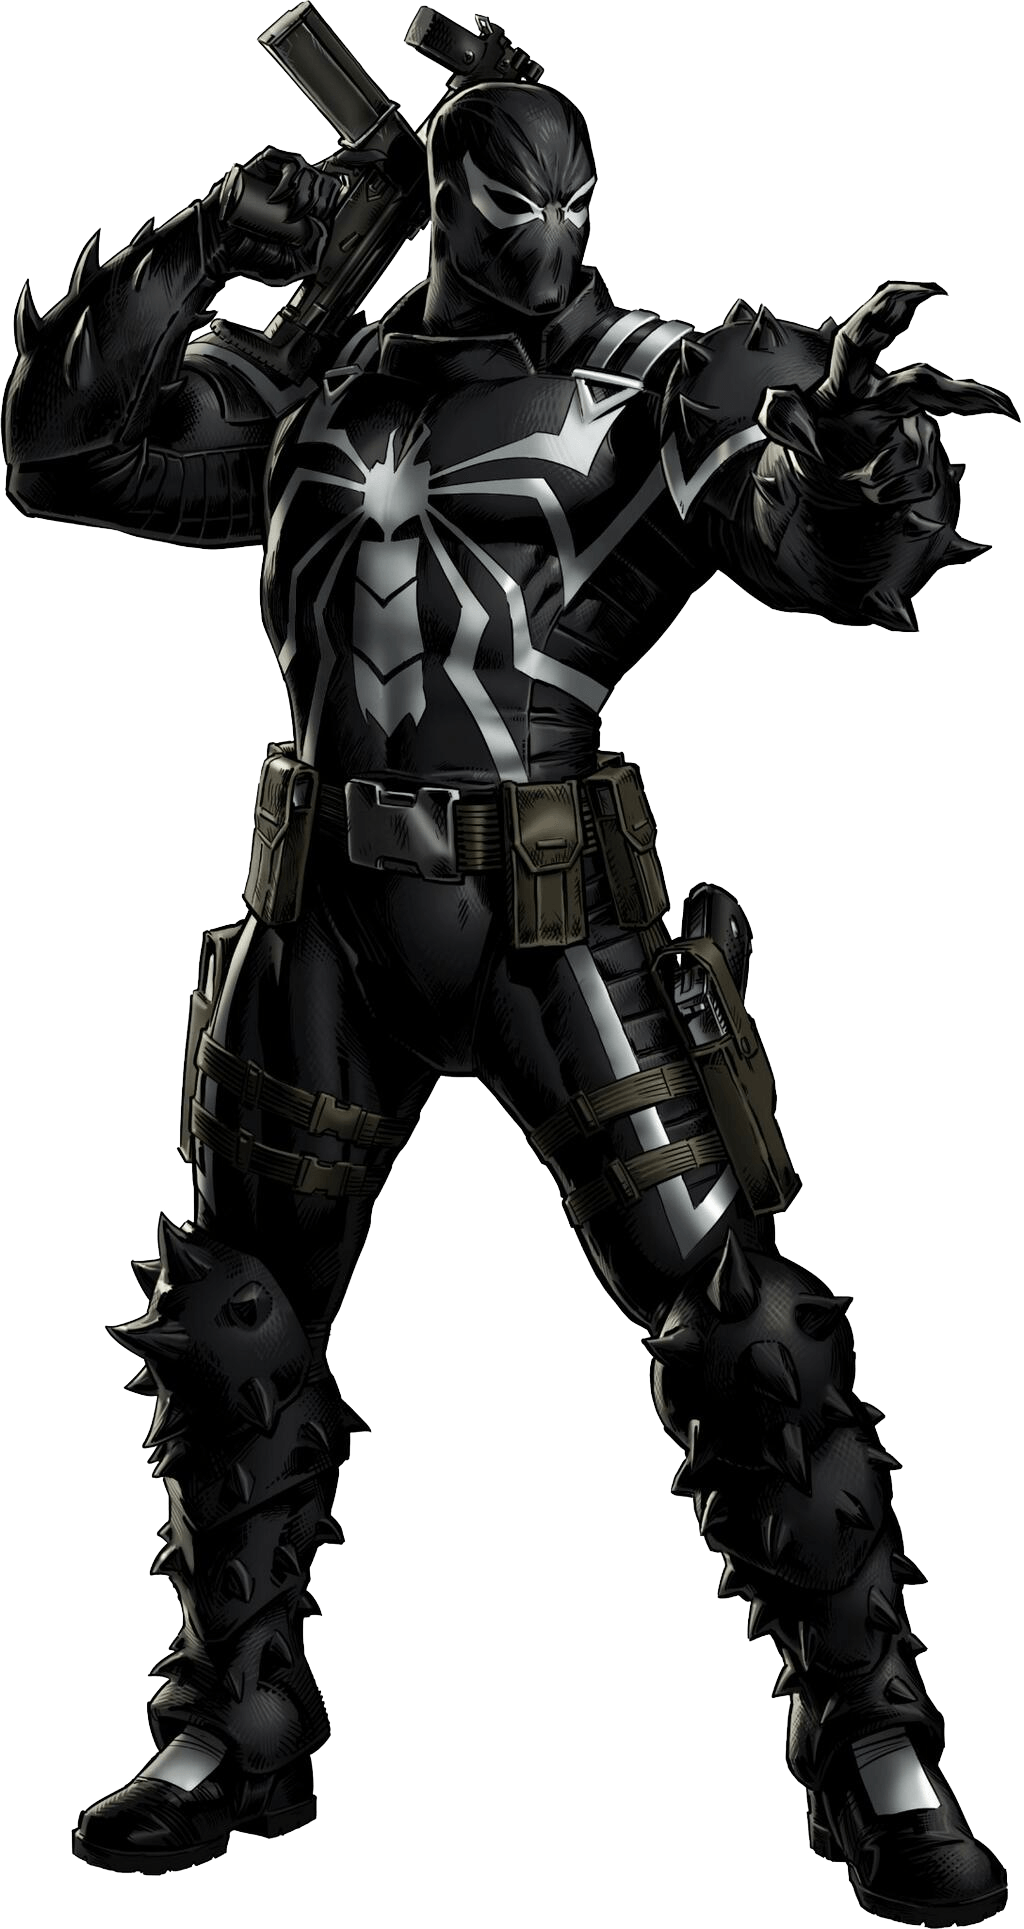 Marvel) Flash Thompson AKA Agent Venom